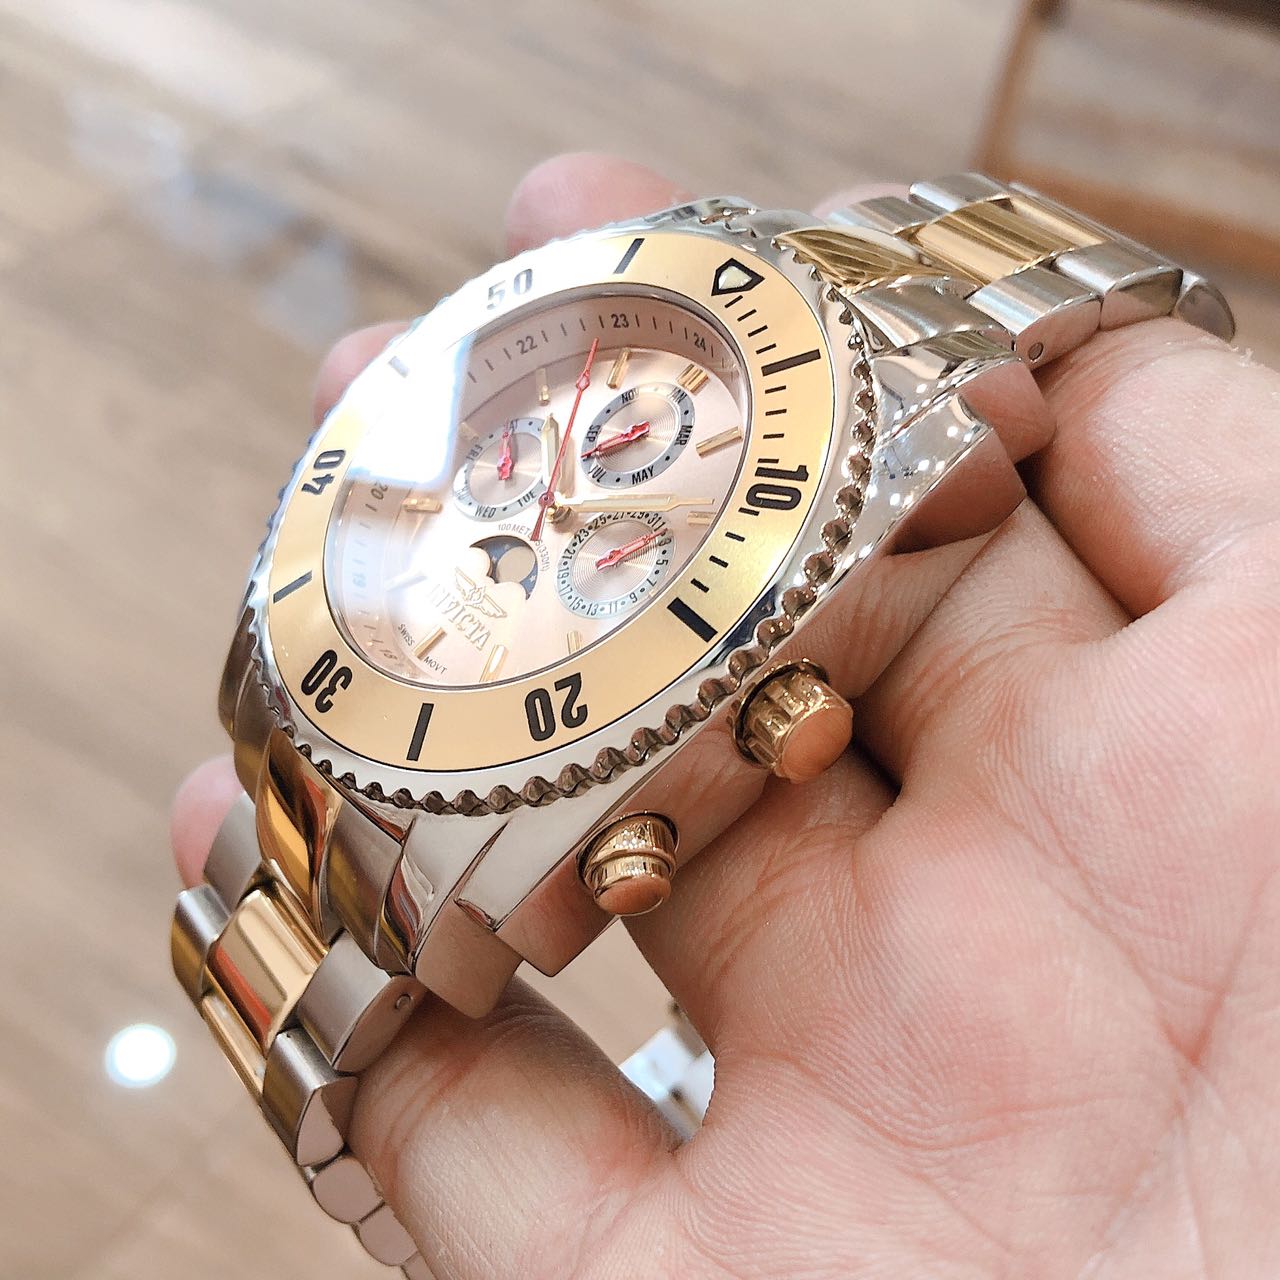 Đồng hồ Invicta chính hãng full box chính hãng Thụy Sĩ